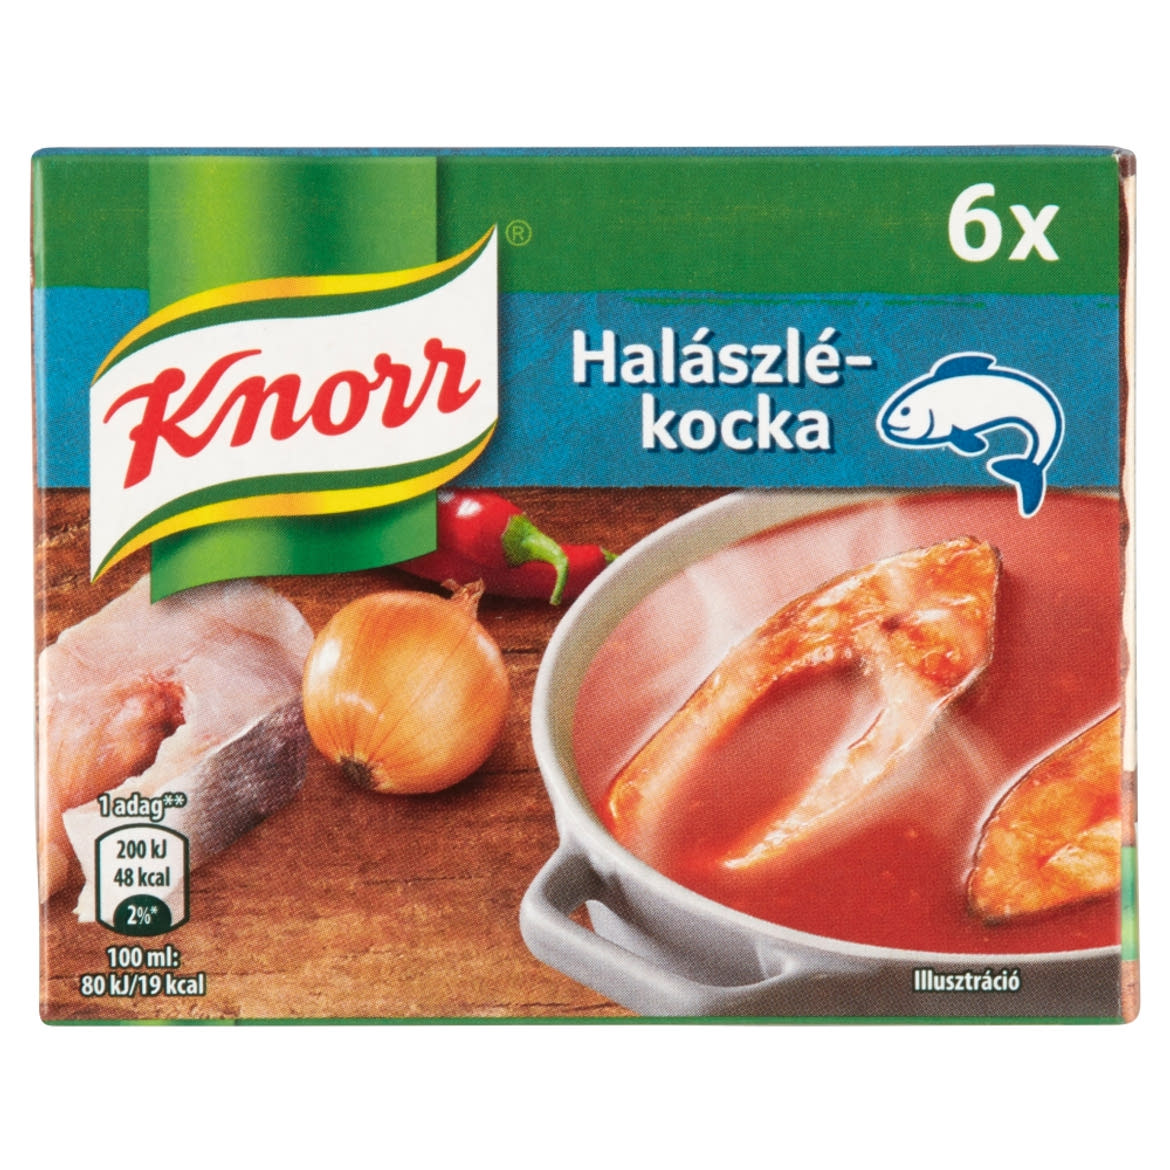 Knorr halászlékocka 6 x